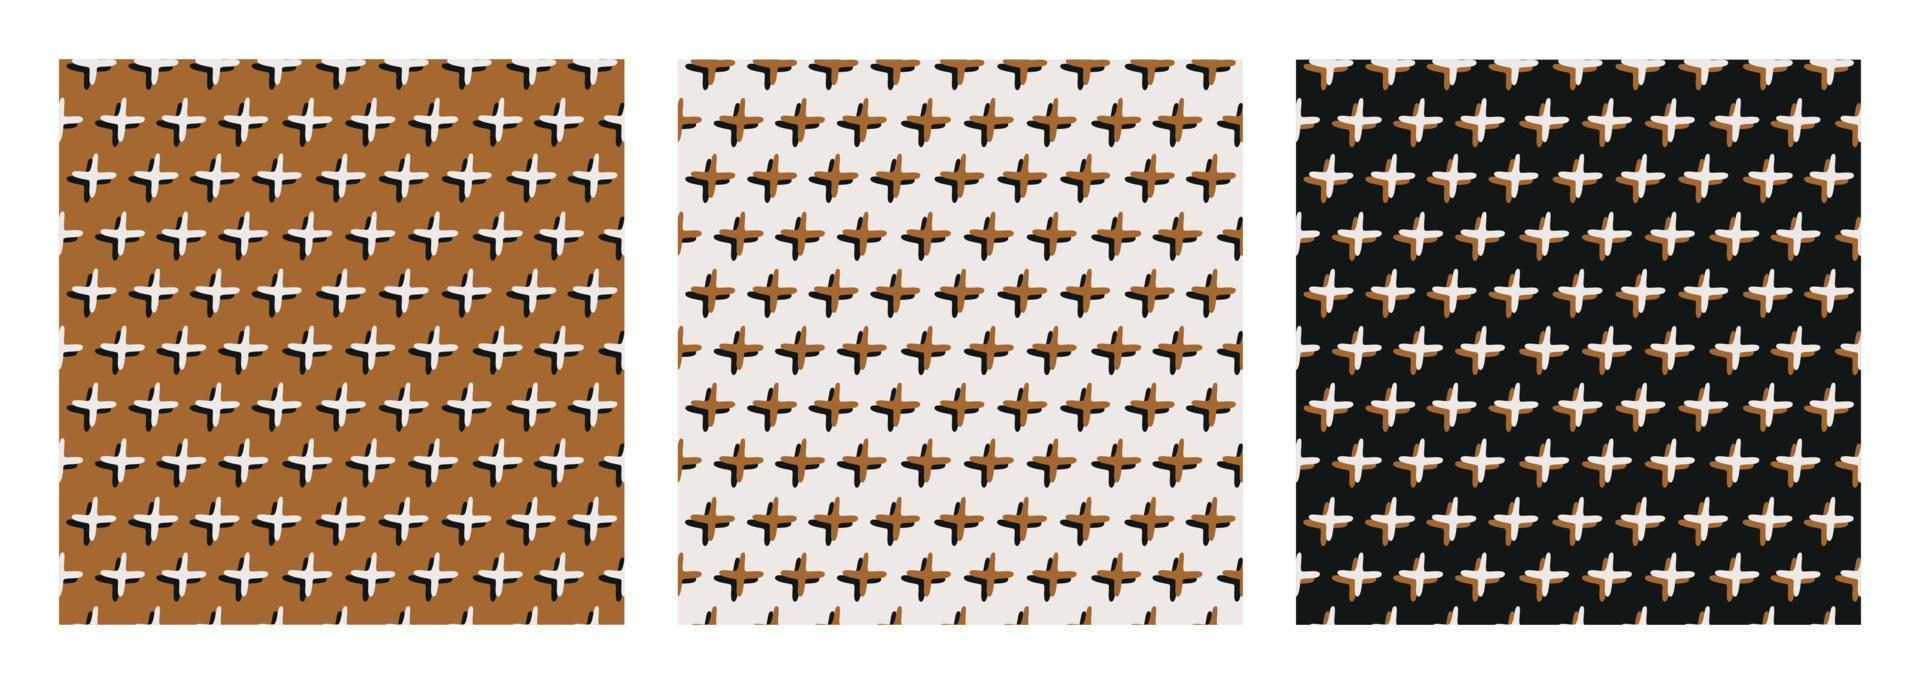 conjunto abstracto de patrones sin fisuras de garabatos 3d cruces sobre fondo mostaza, negro y claro. diseño vectorial moderno vector